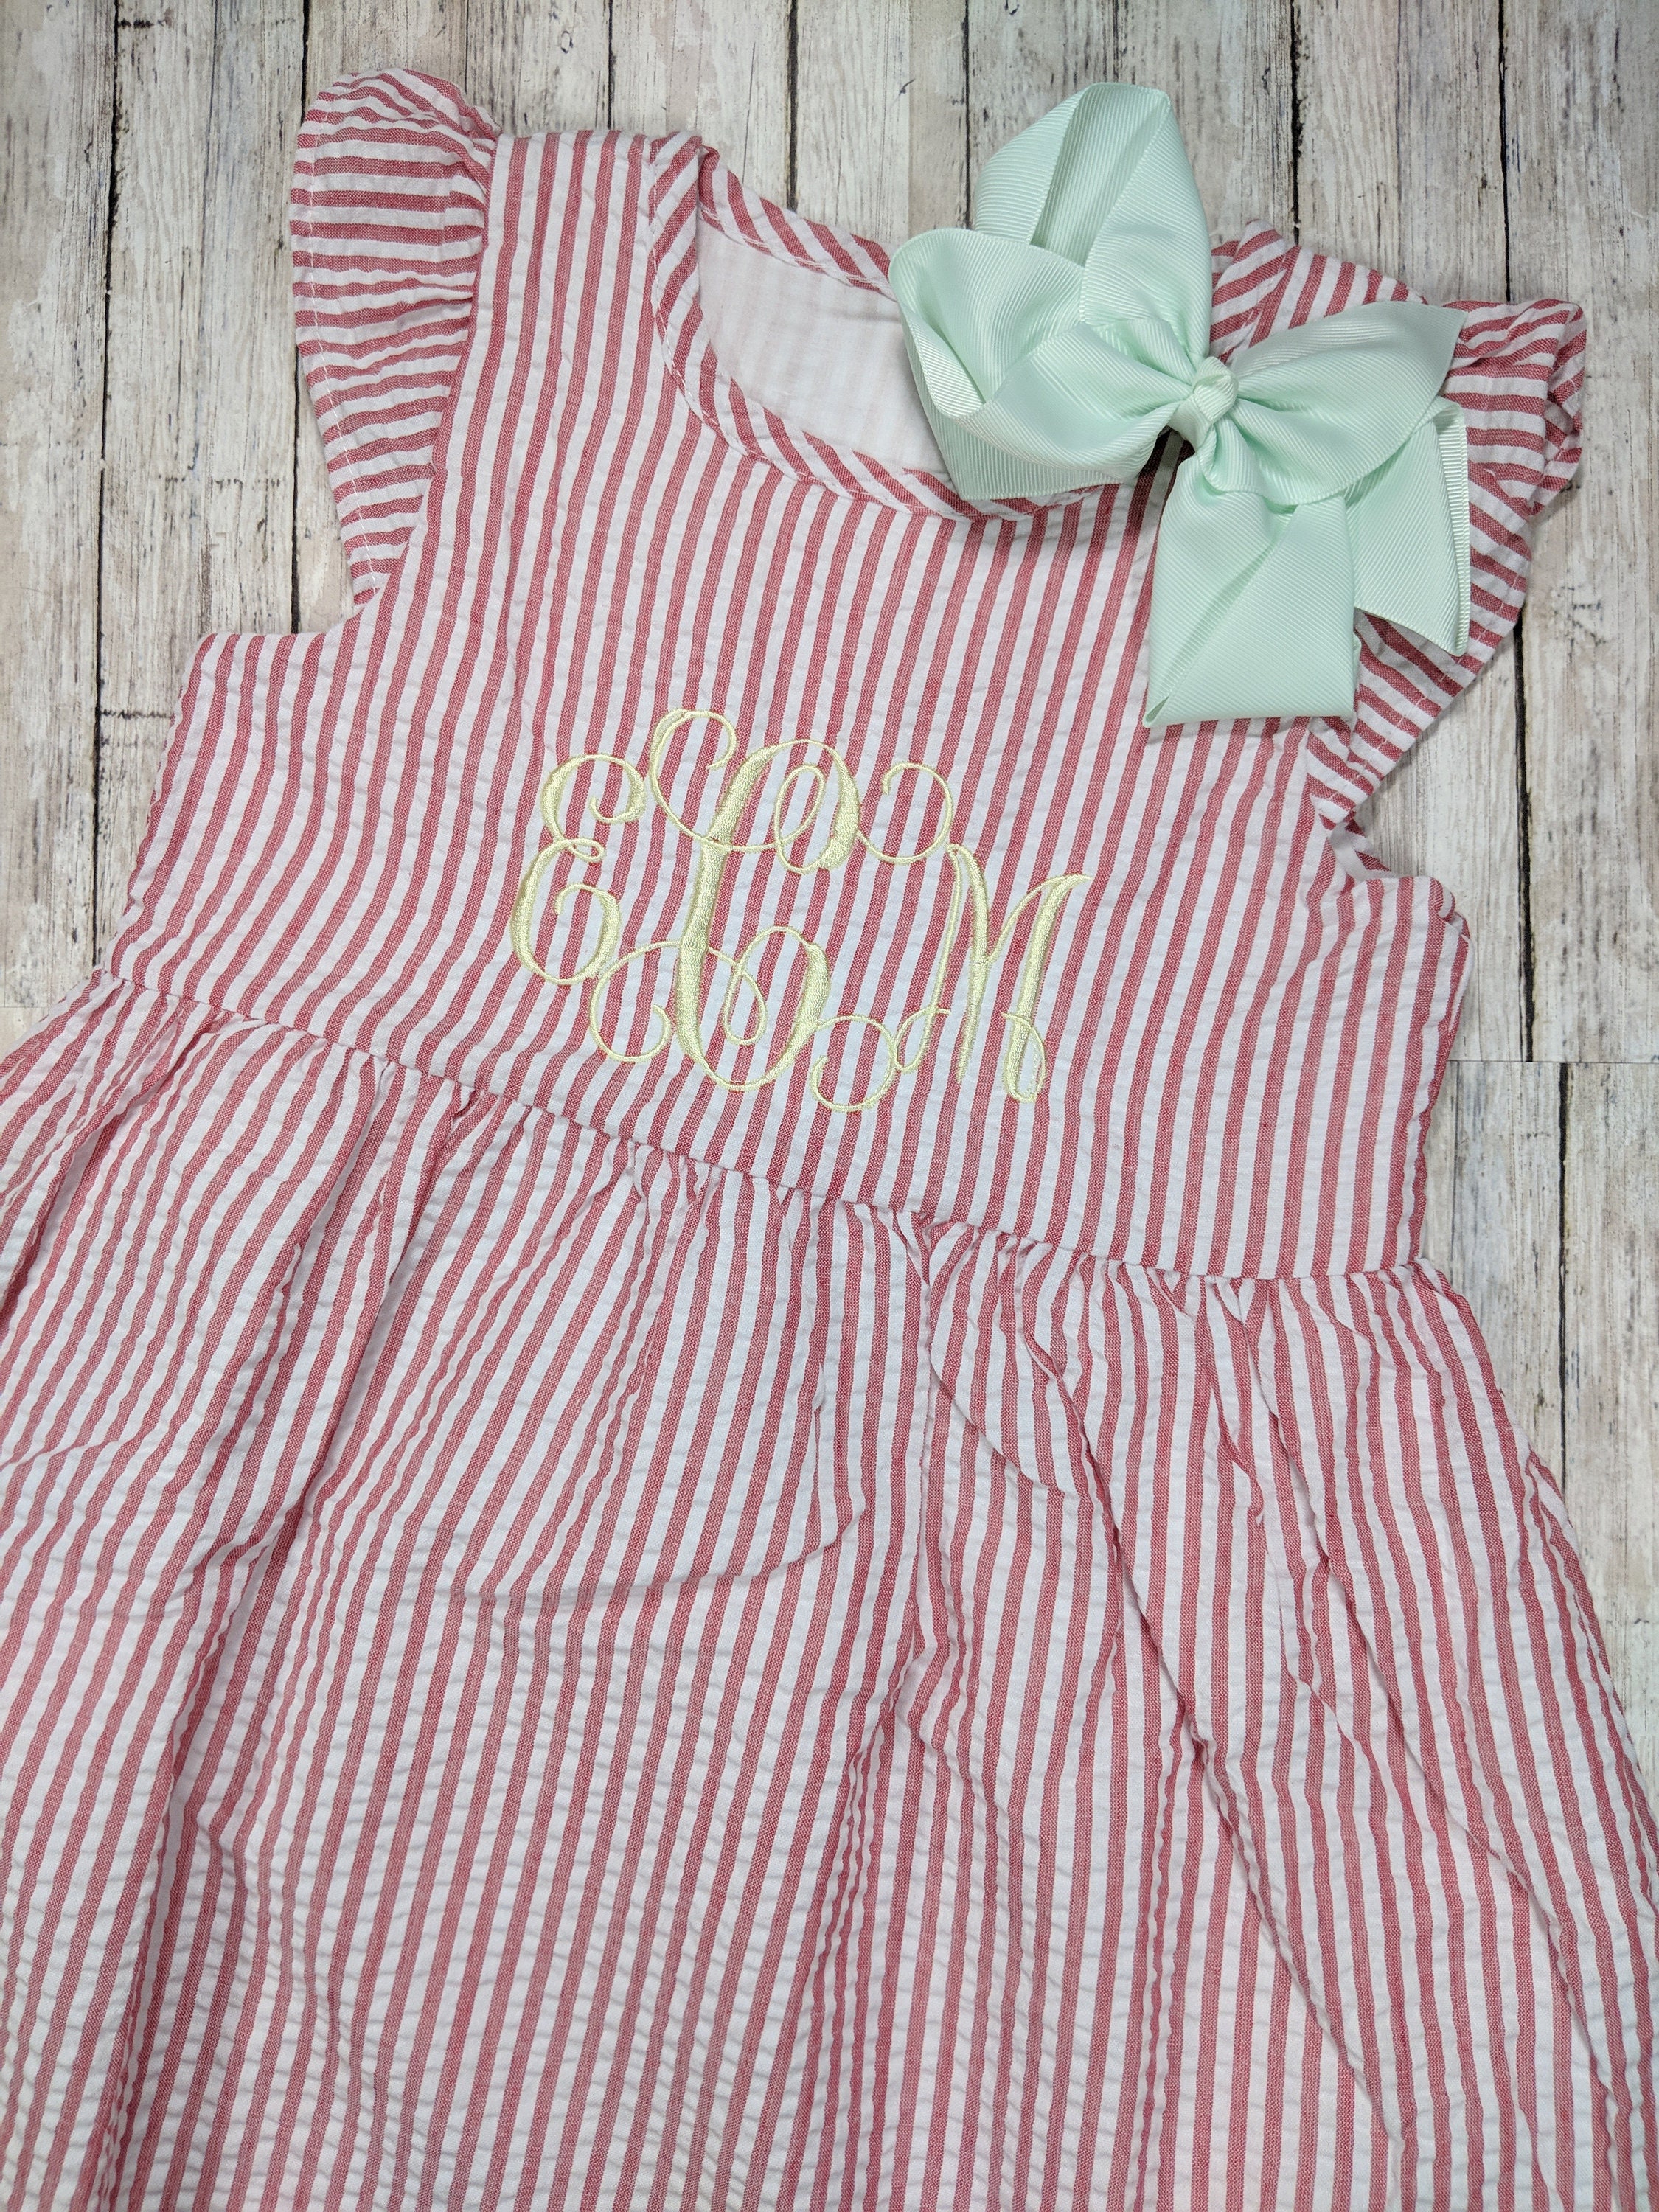 Monogrammed Seersucker Easter Dress Girl Baby Toddler | Etsy